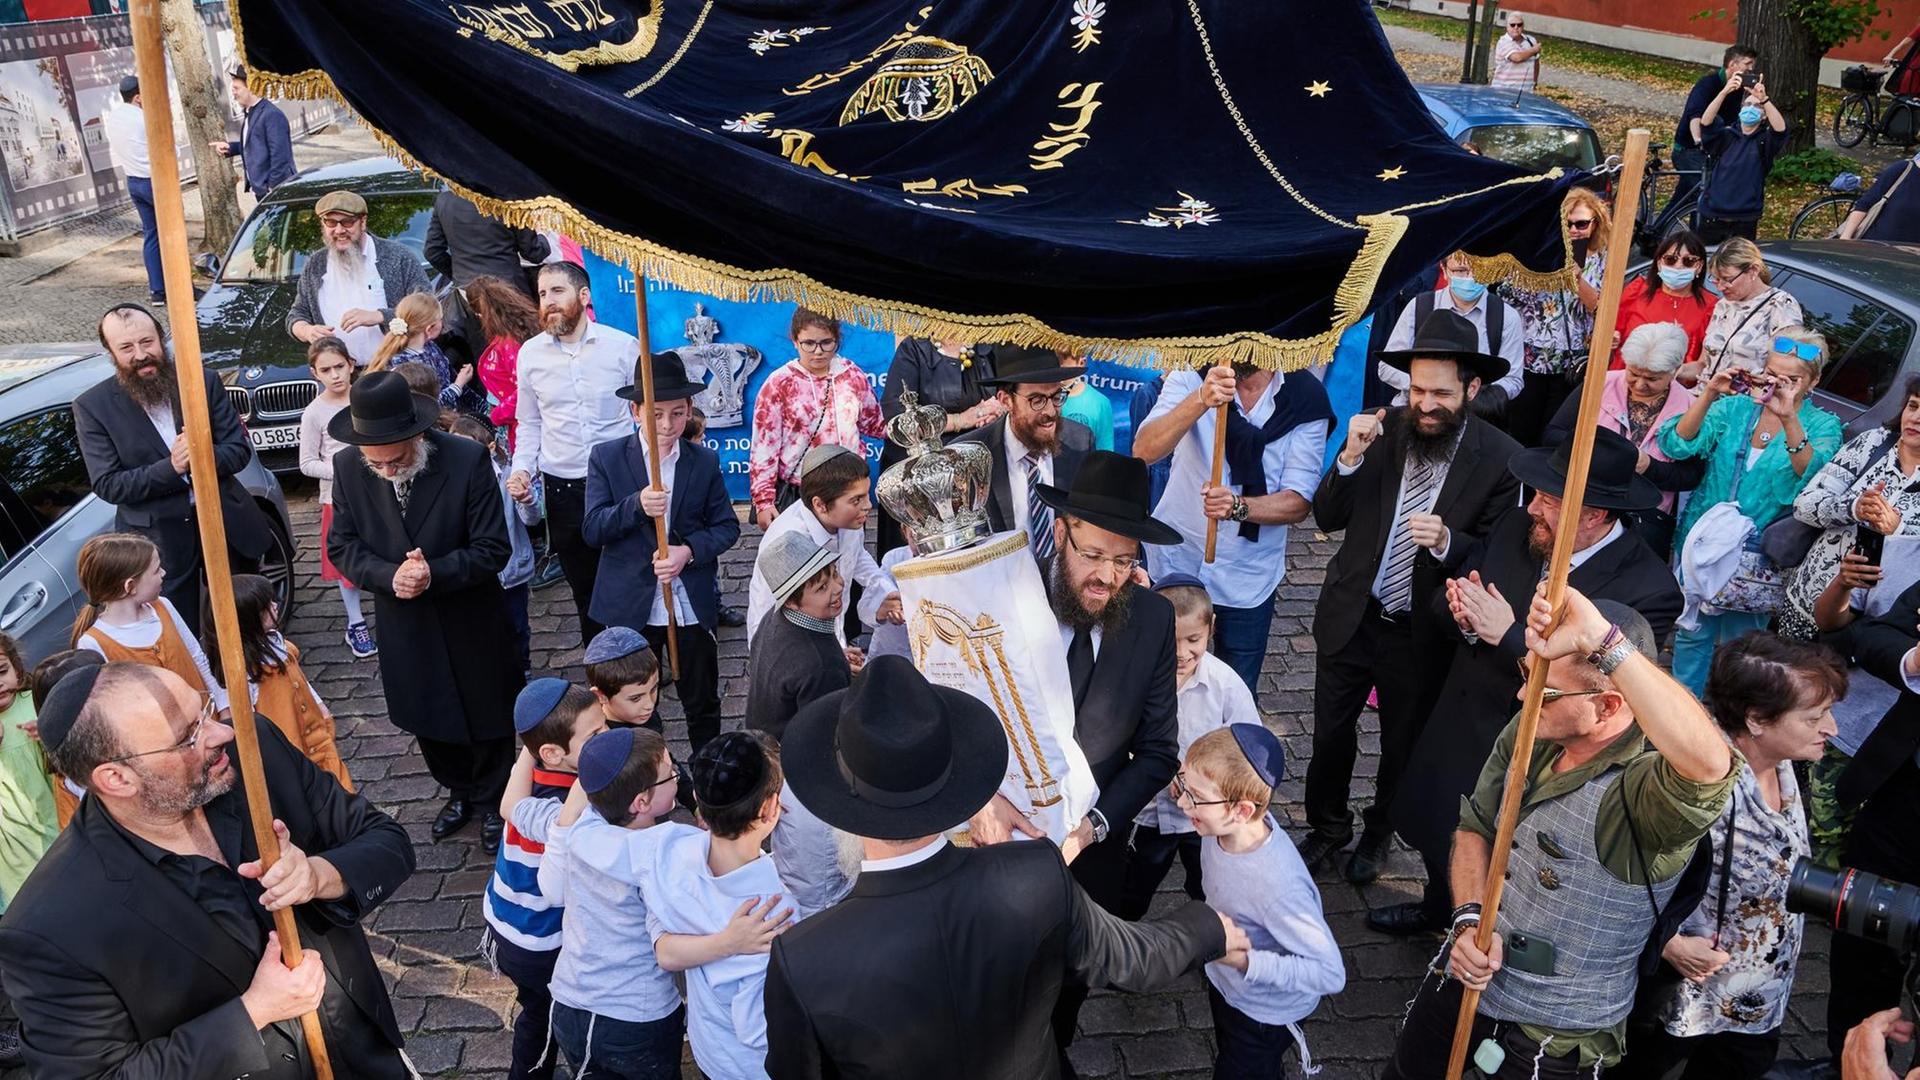 Rabbiner Yehuda Teichtal (Mitte) hält die neuen Thora in der Hand. Kinder mit Kippas tanzen um ihn herum. Viele Rabbiner aus anderen Gemeinden kamen nach Potsdam, um mit den Gemeindemitgliedern die Einweihung der neuen Thora für die Synagoge in der Kietzstraße zu feiern.